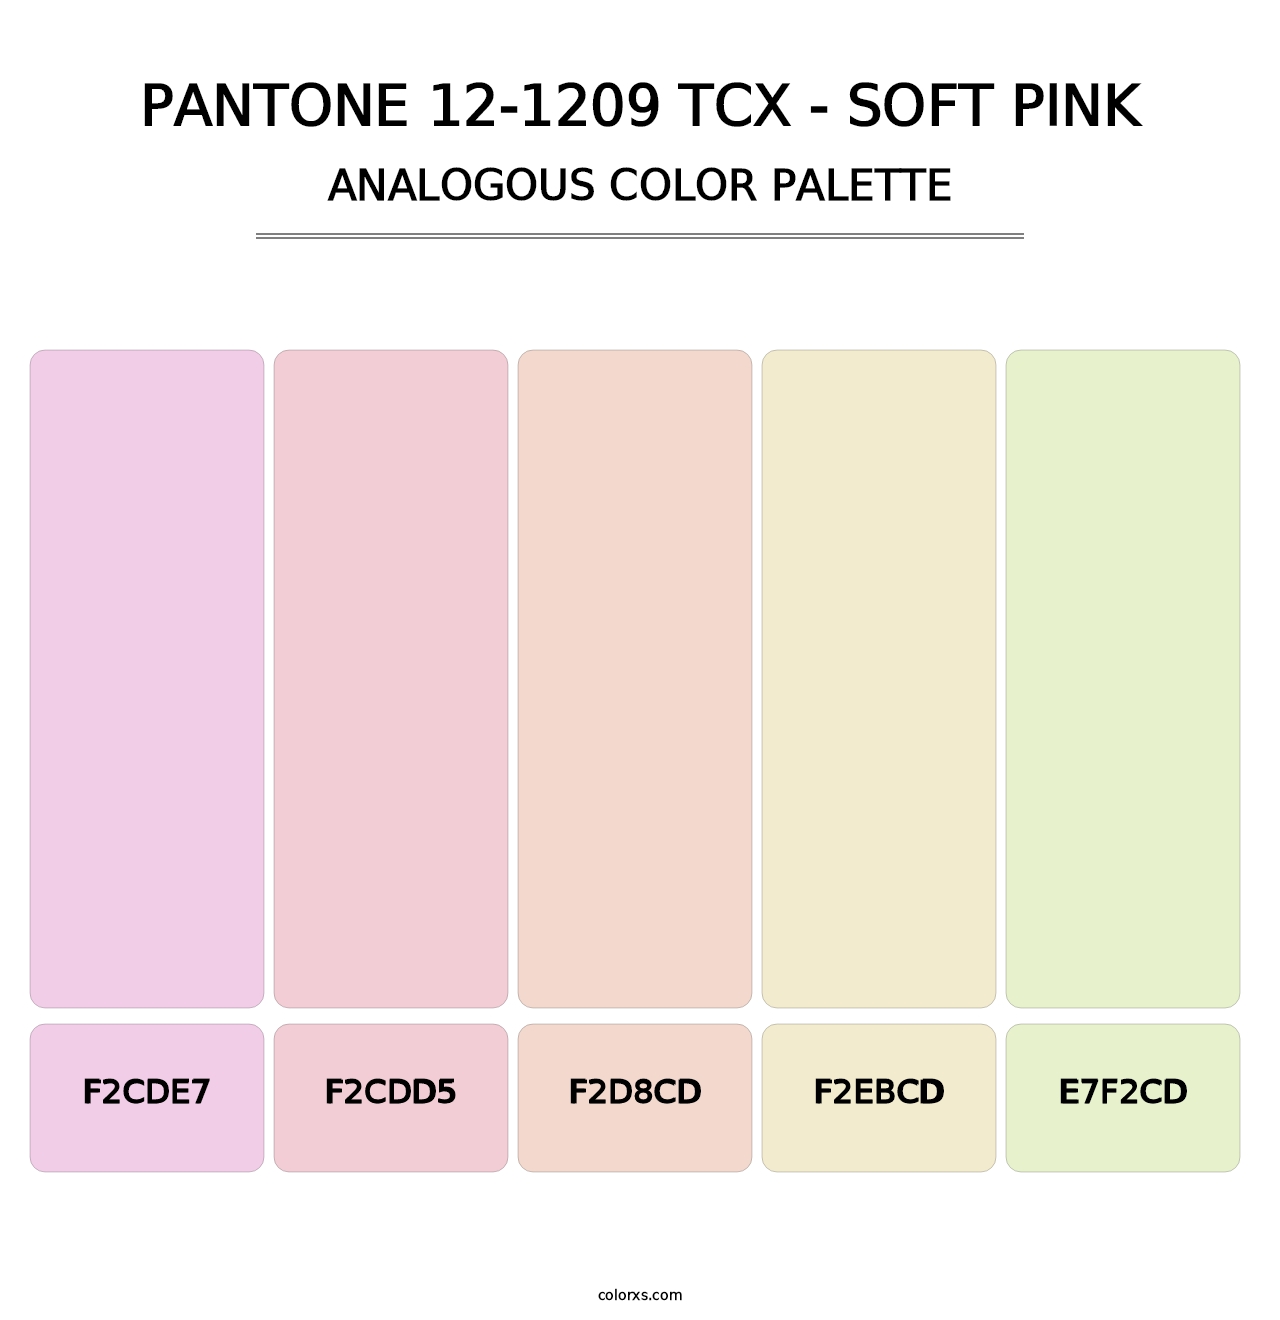 PANTONE 12-1209 TCX - Soft Pink - Analogous Color Palette